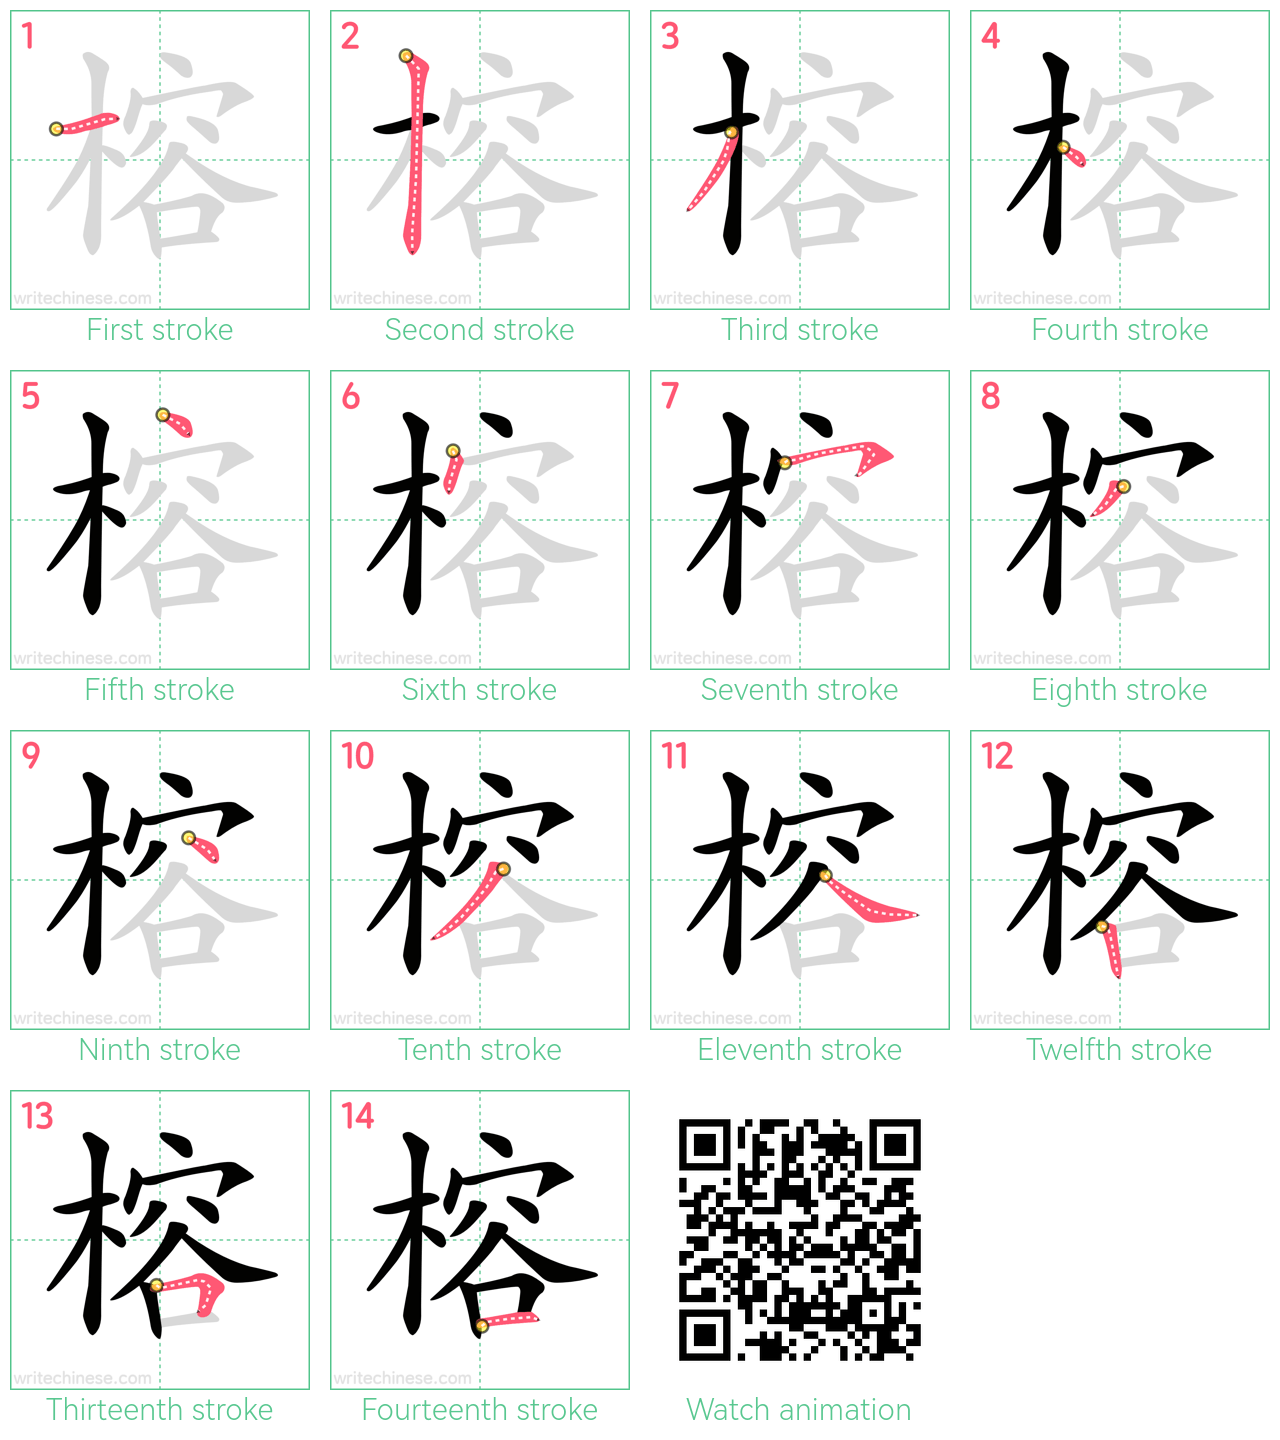 榕 step-by-step stroke order diagrams